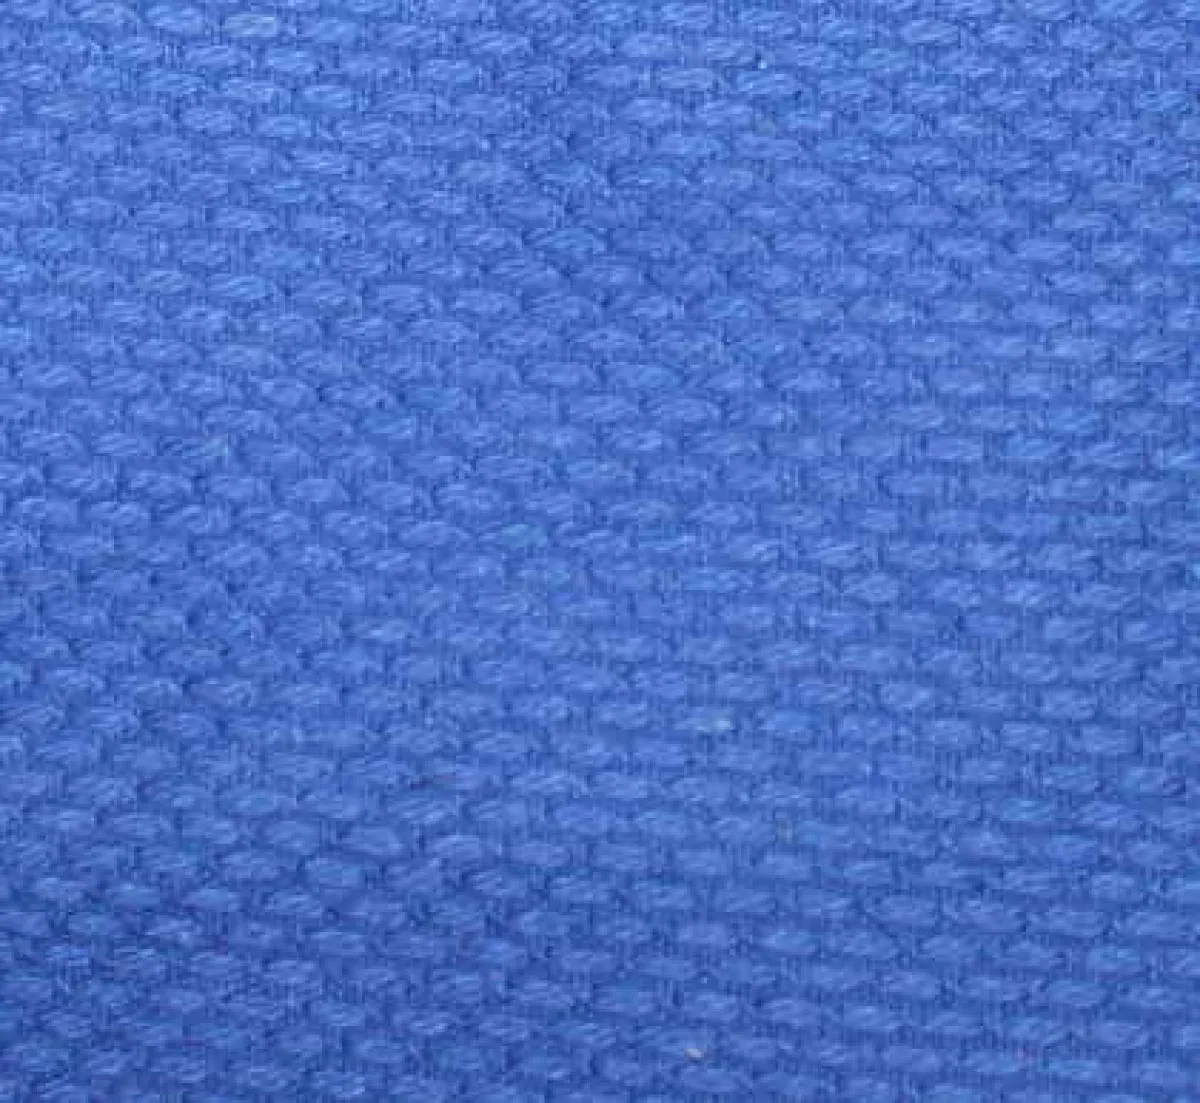 Sac de judo bleu en tissu pour combinaison de judo